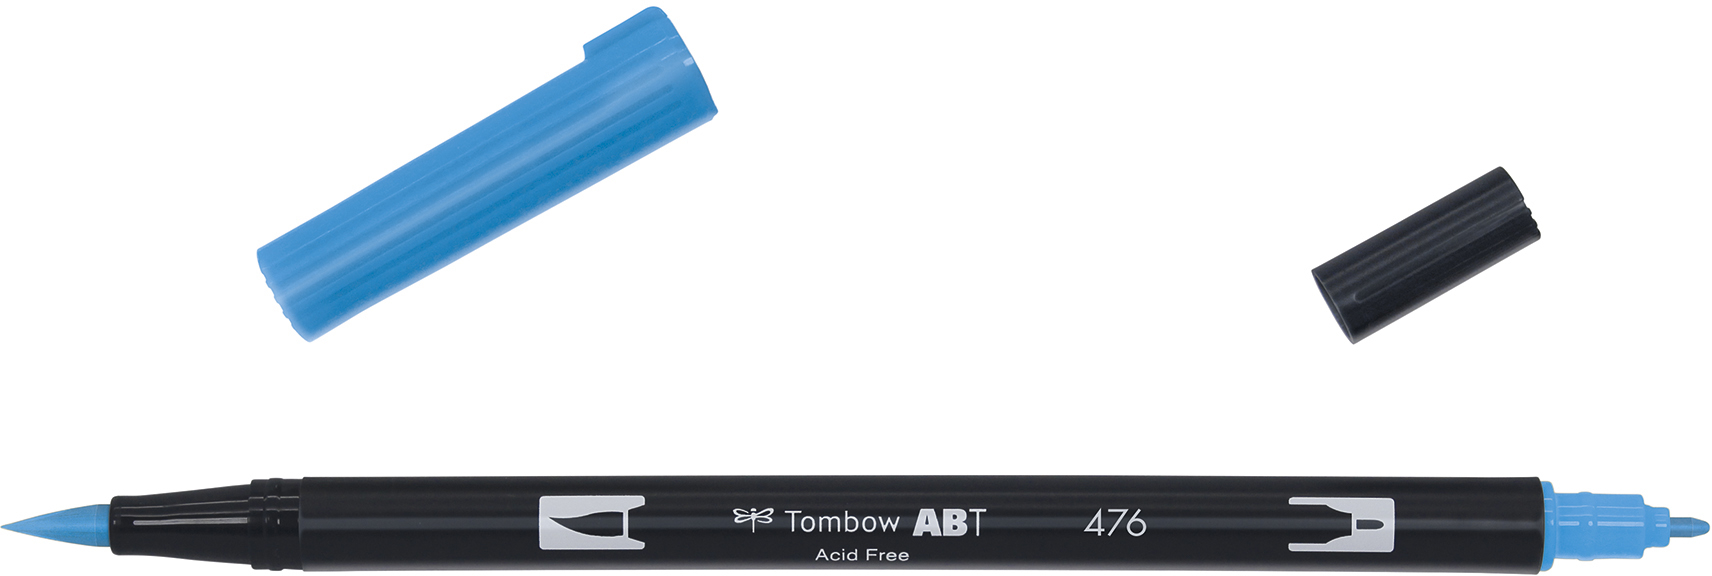 TOMBOW Dual Brush Pen ABT 476 cyan cyan